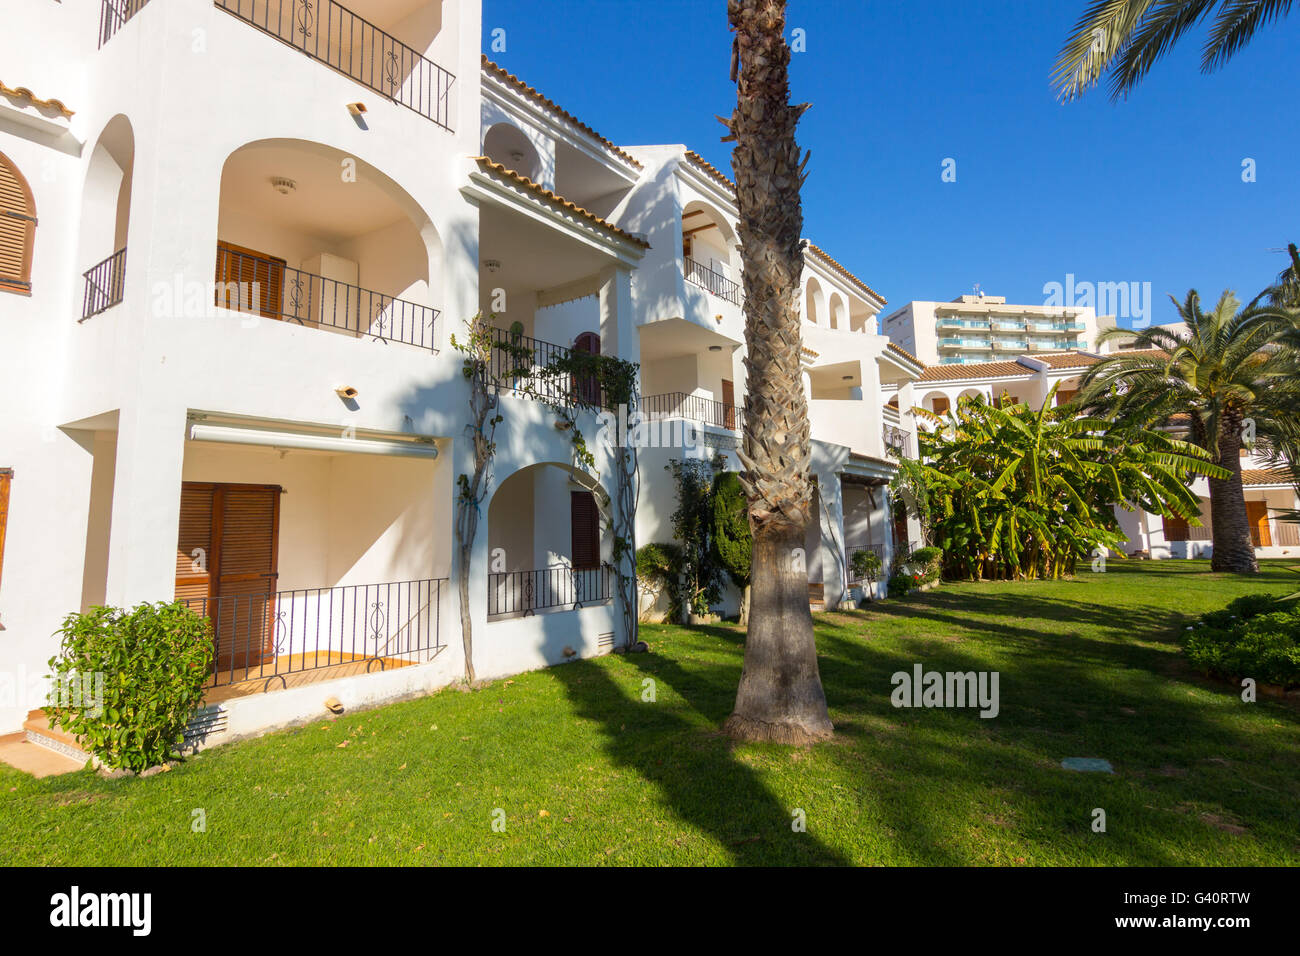 Jardines de casas blancas típicas del sur de España Foto de stock